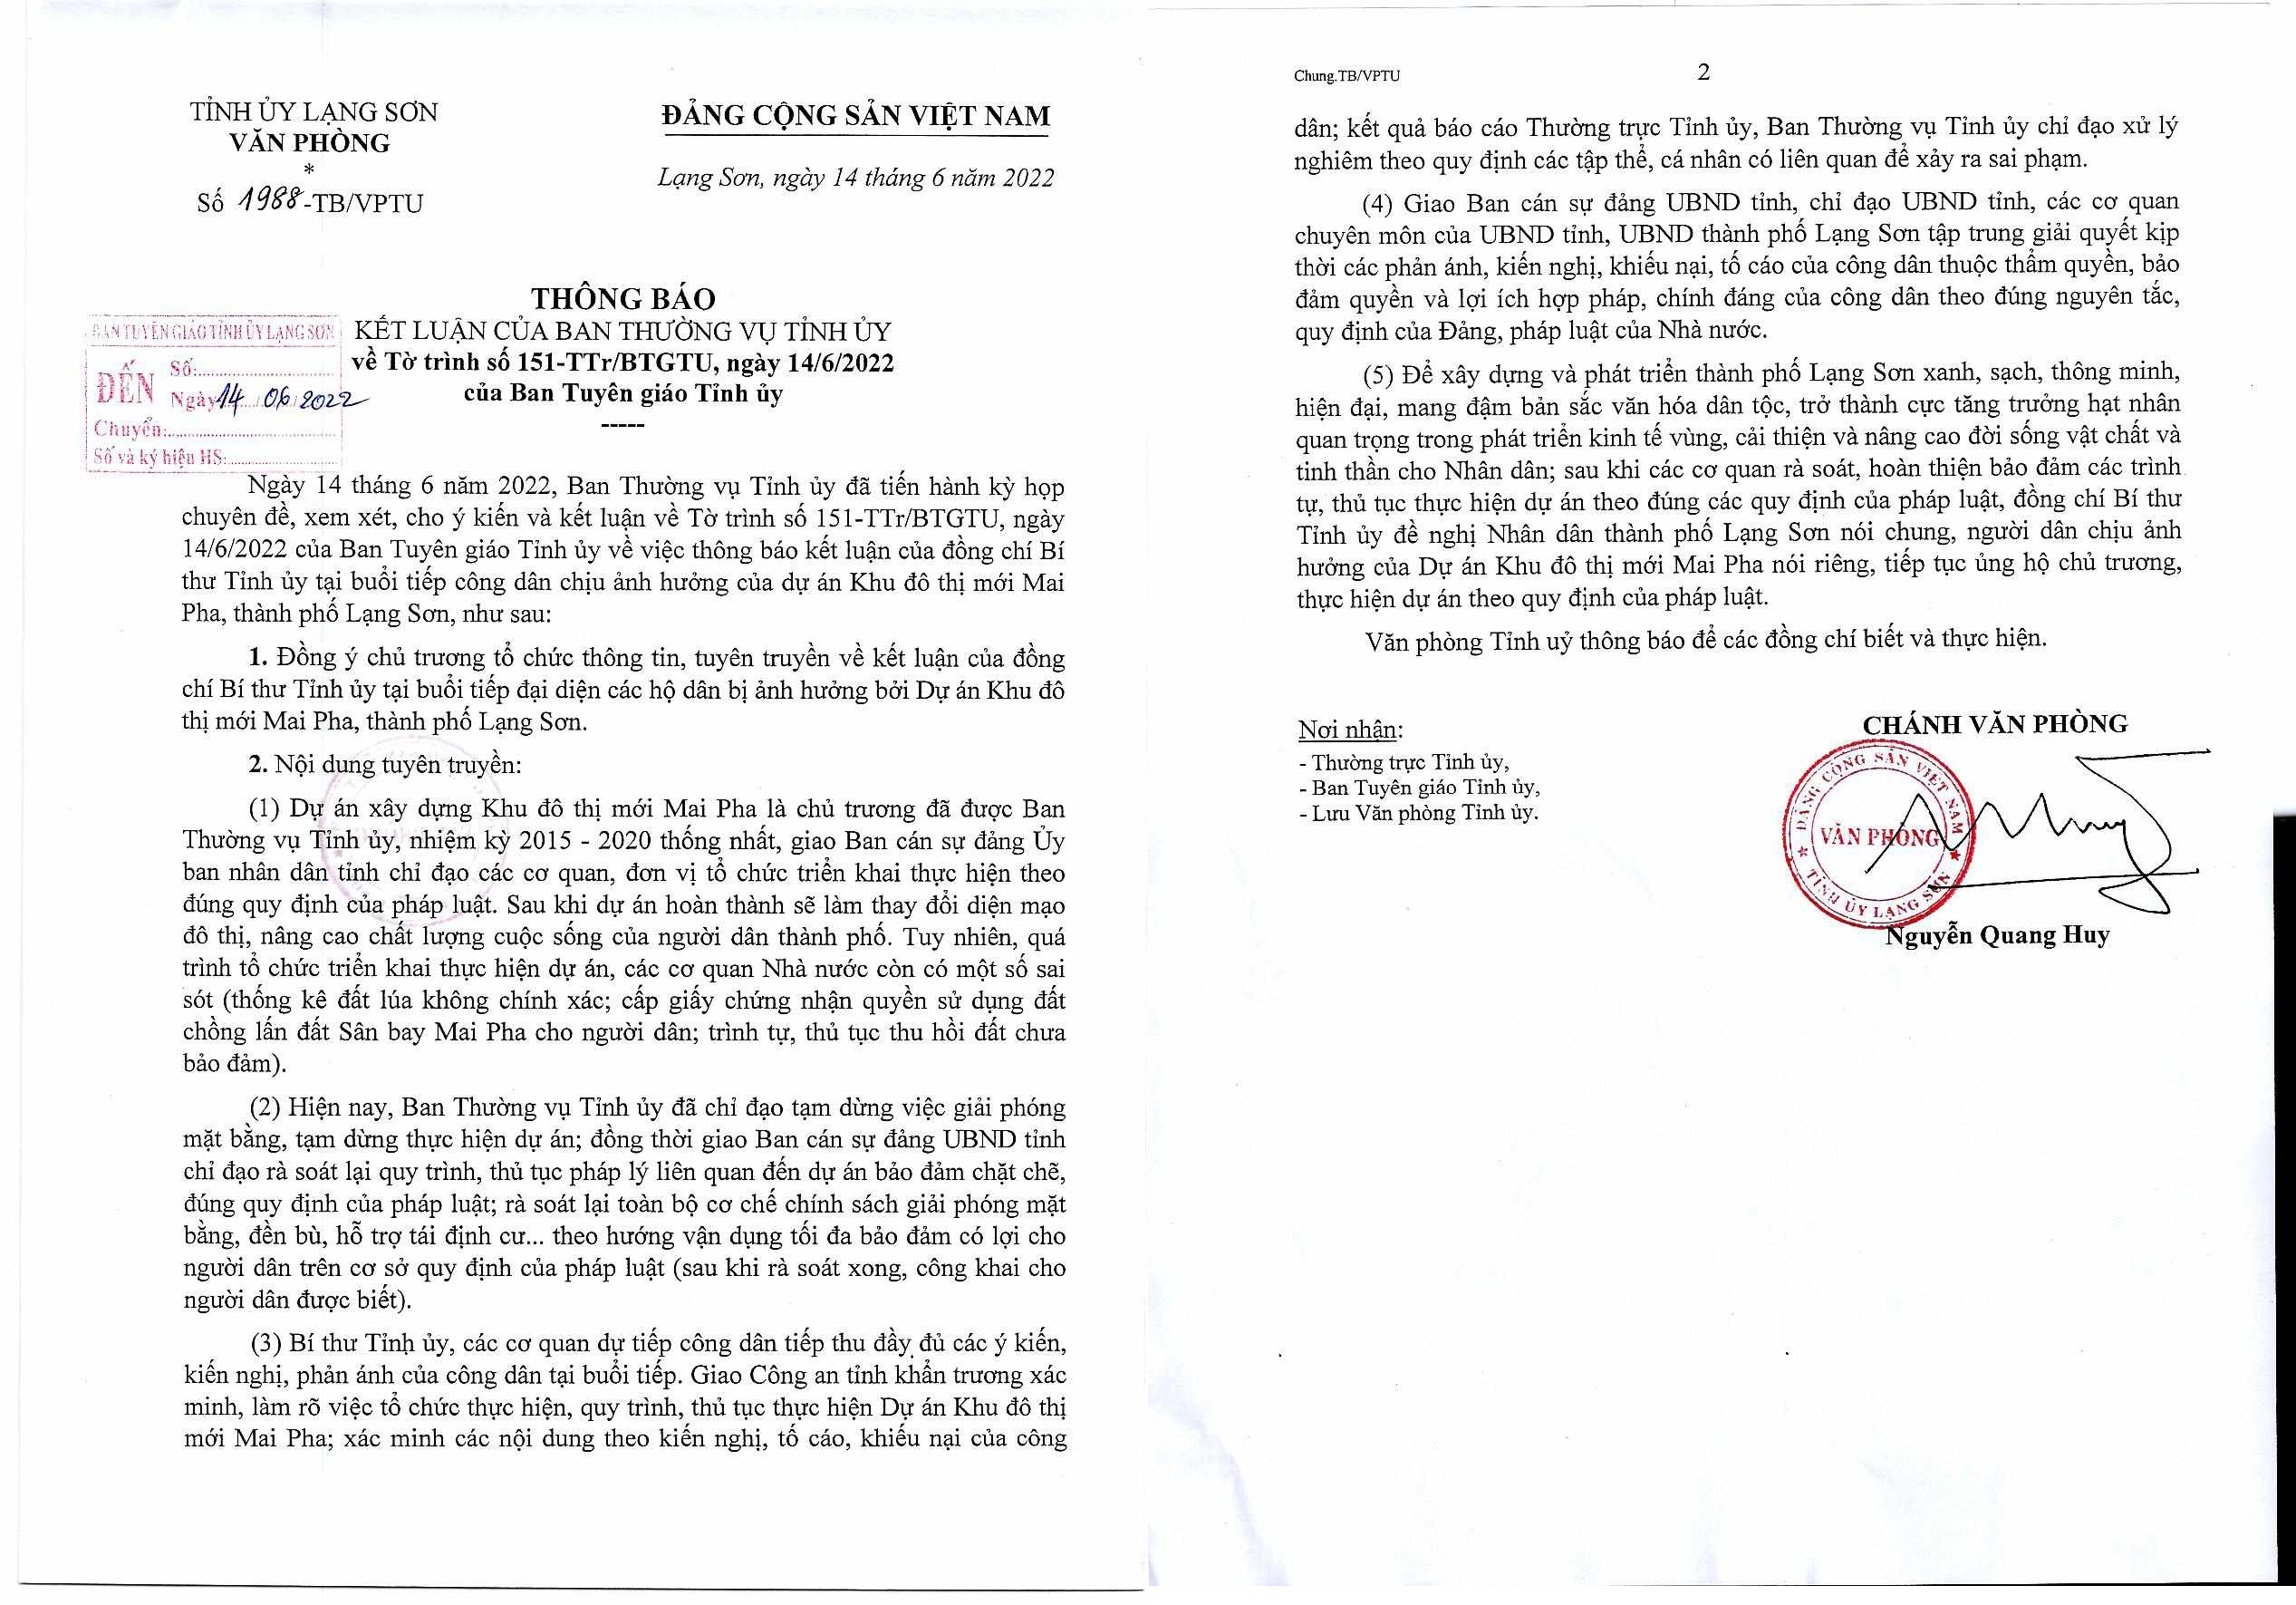 Thông báo số 1988-TB/VPTU, ngày 14/6/2022 của Văn phòng Tỉnh ủy Lạng Sơn.